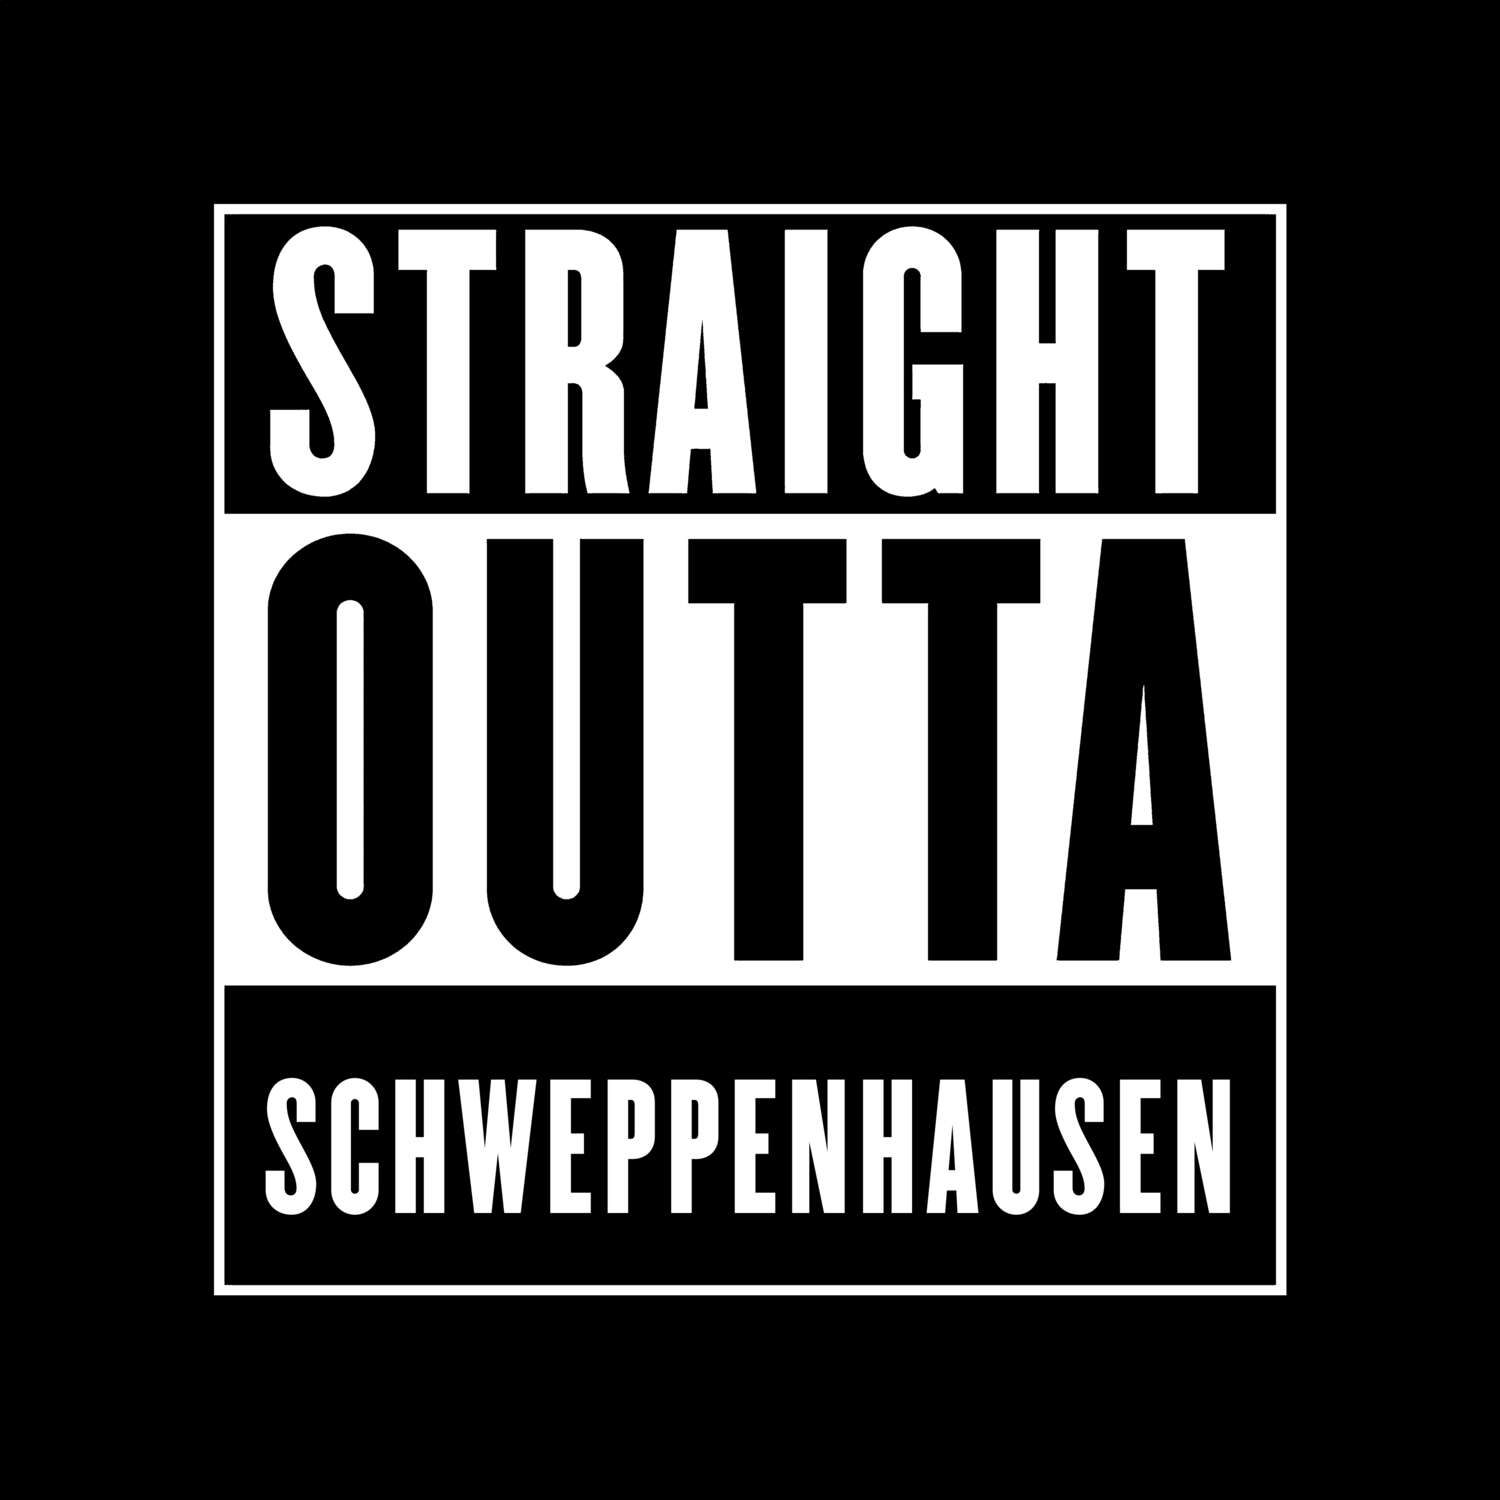 Schweppenhausen T-Shirt »Straight Outta«